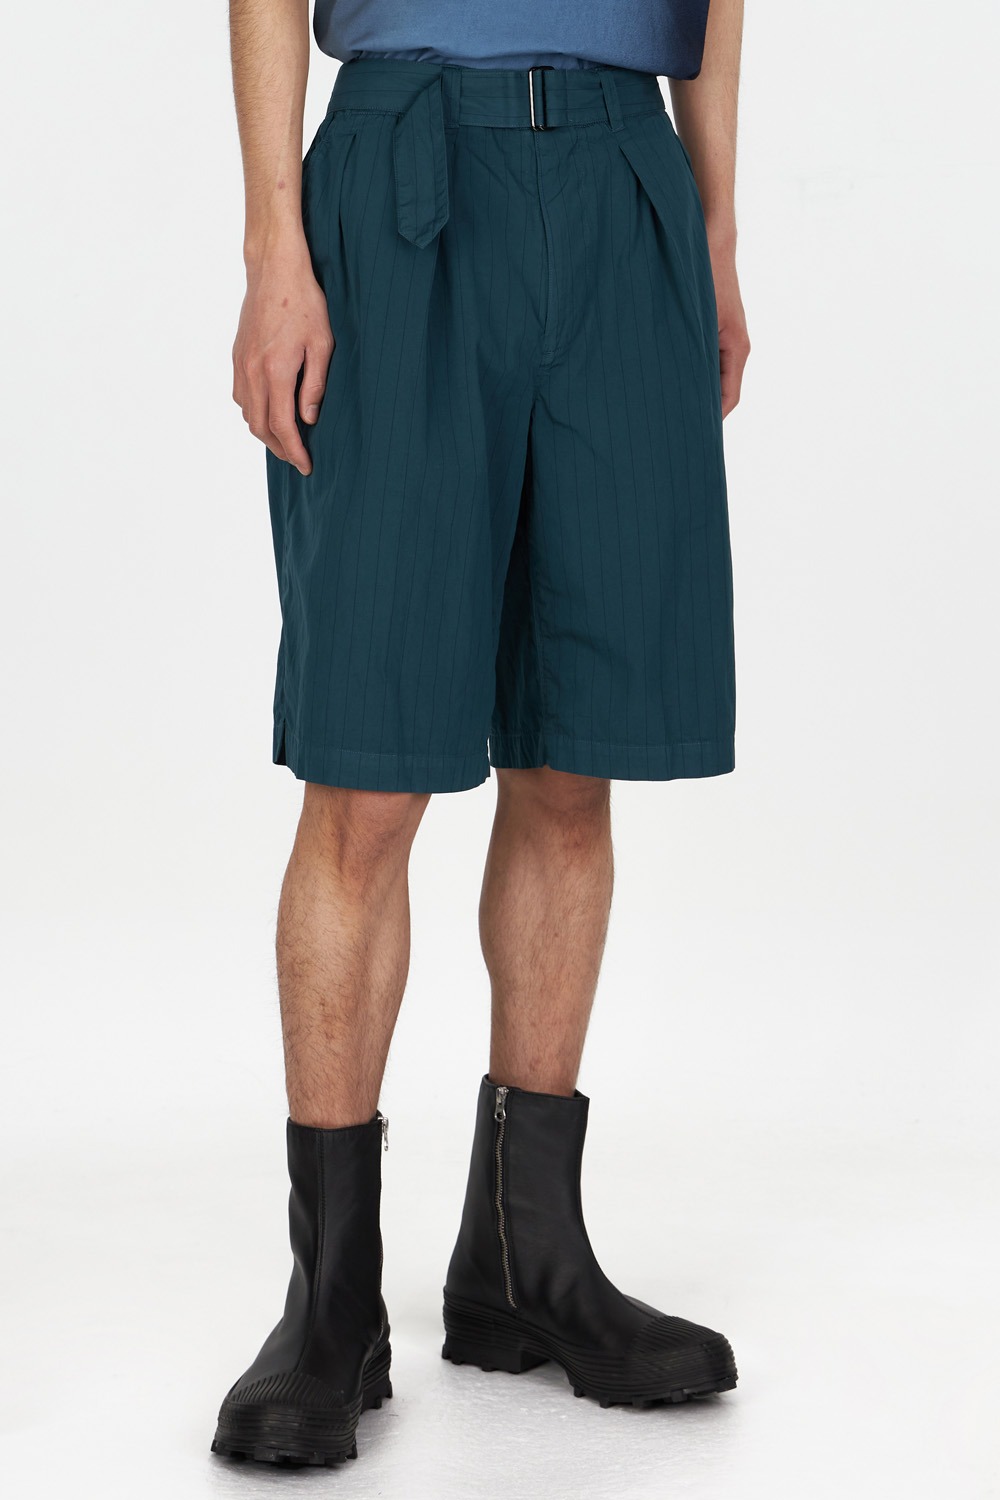 Garment Dye Stripe Belted Wide Shorts_Green